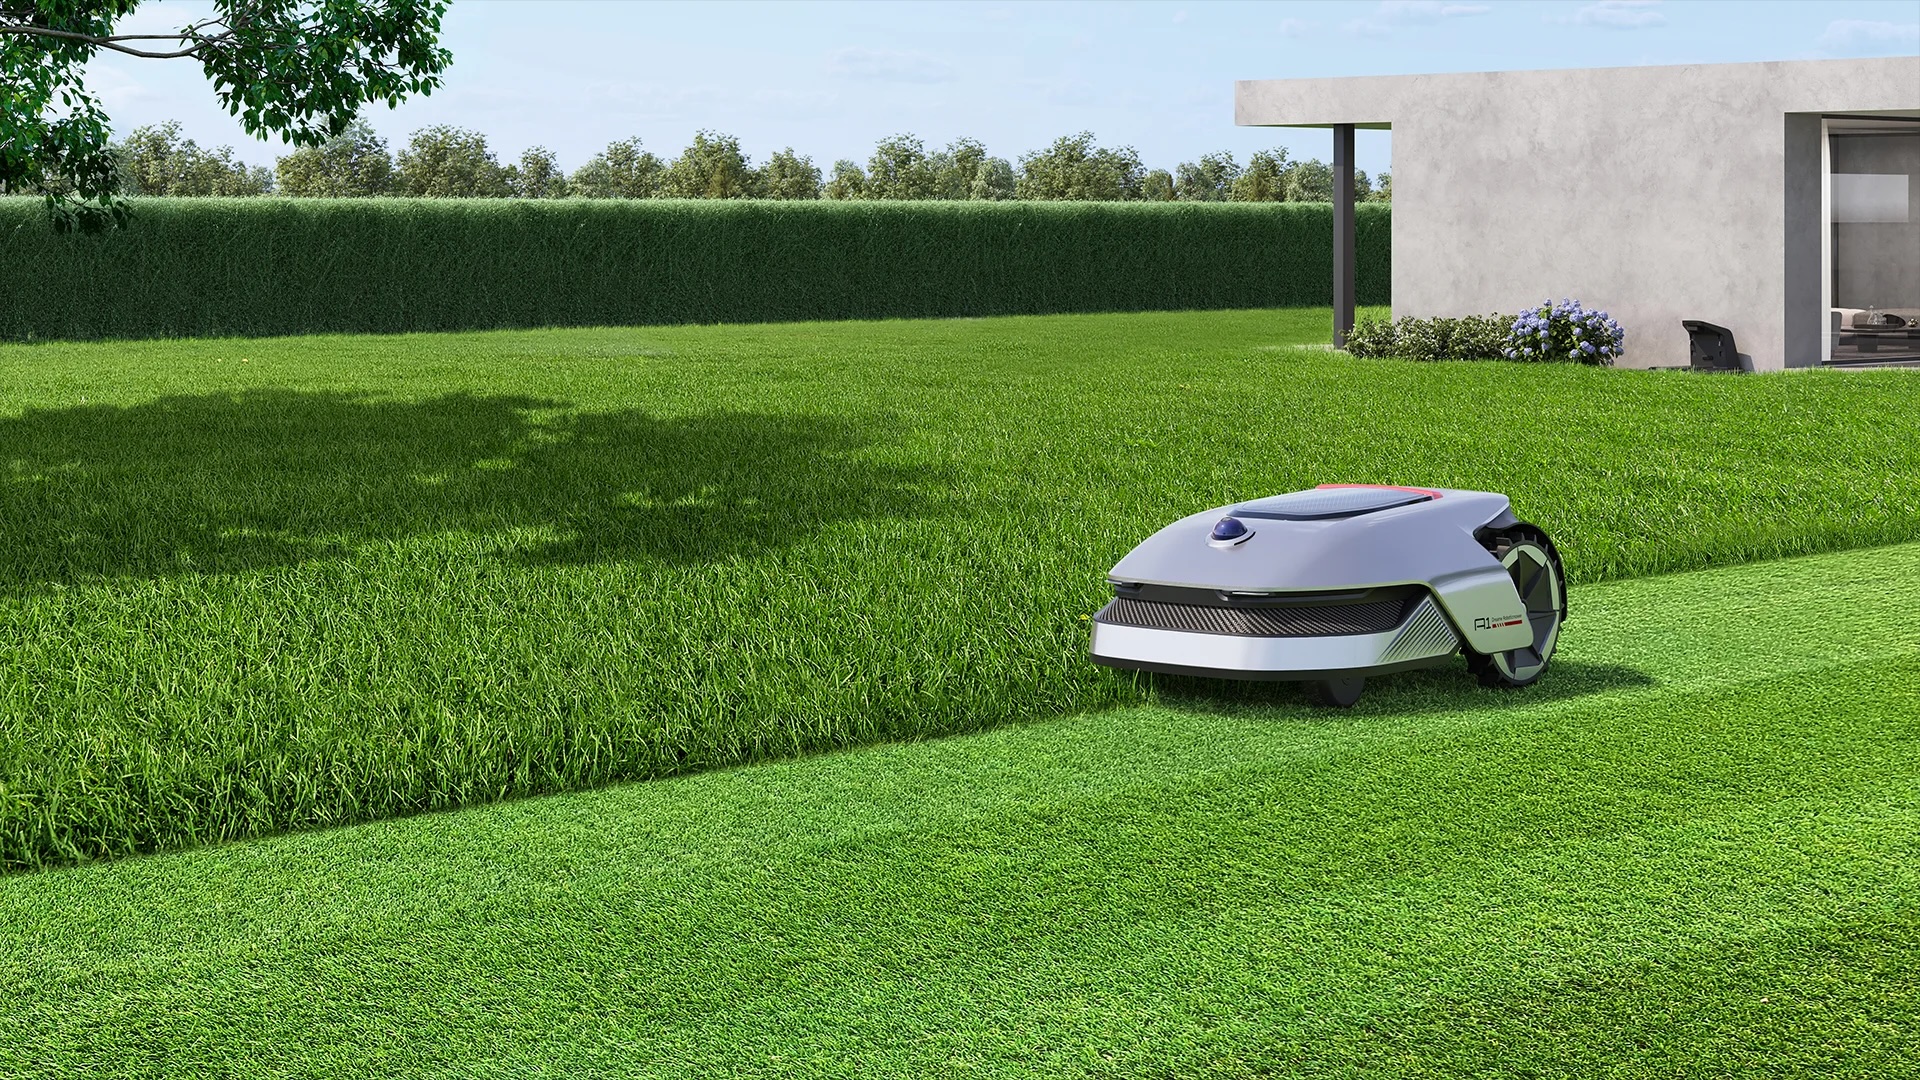 Dreame A1 : de la maison au jardin avec un premier robot tondeuse sans câble périphérique